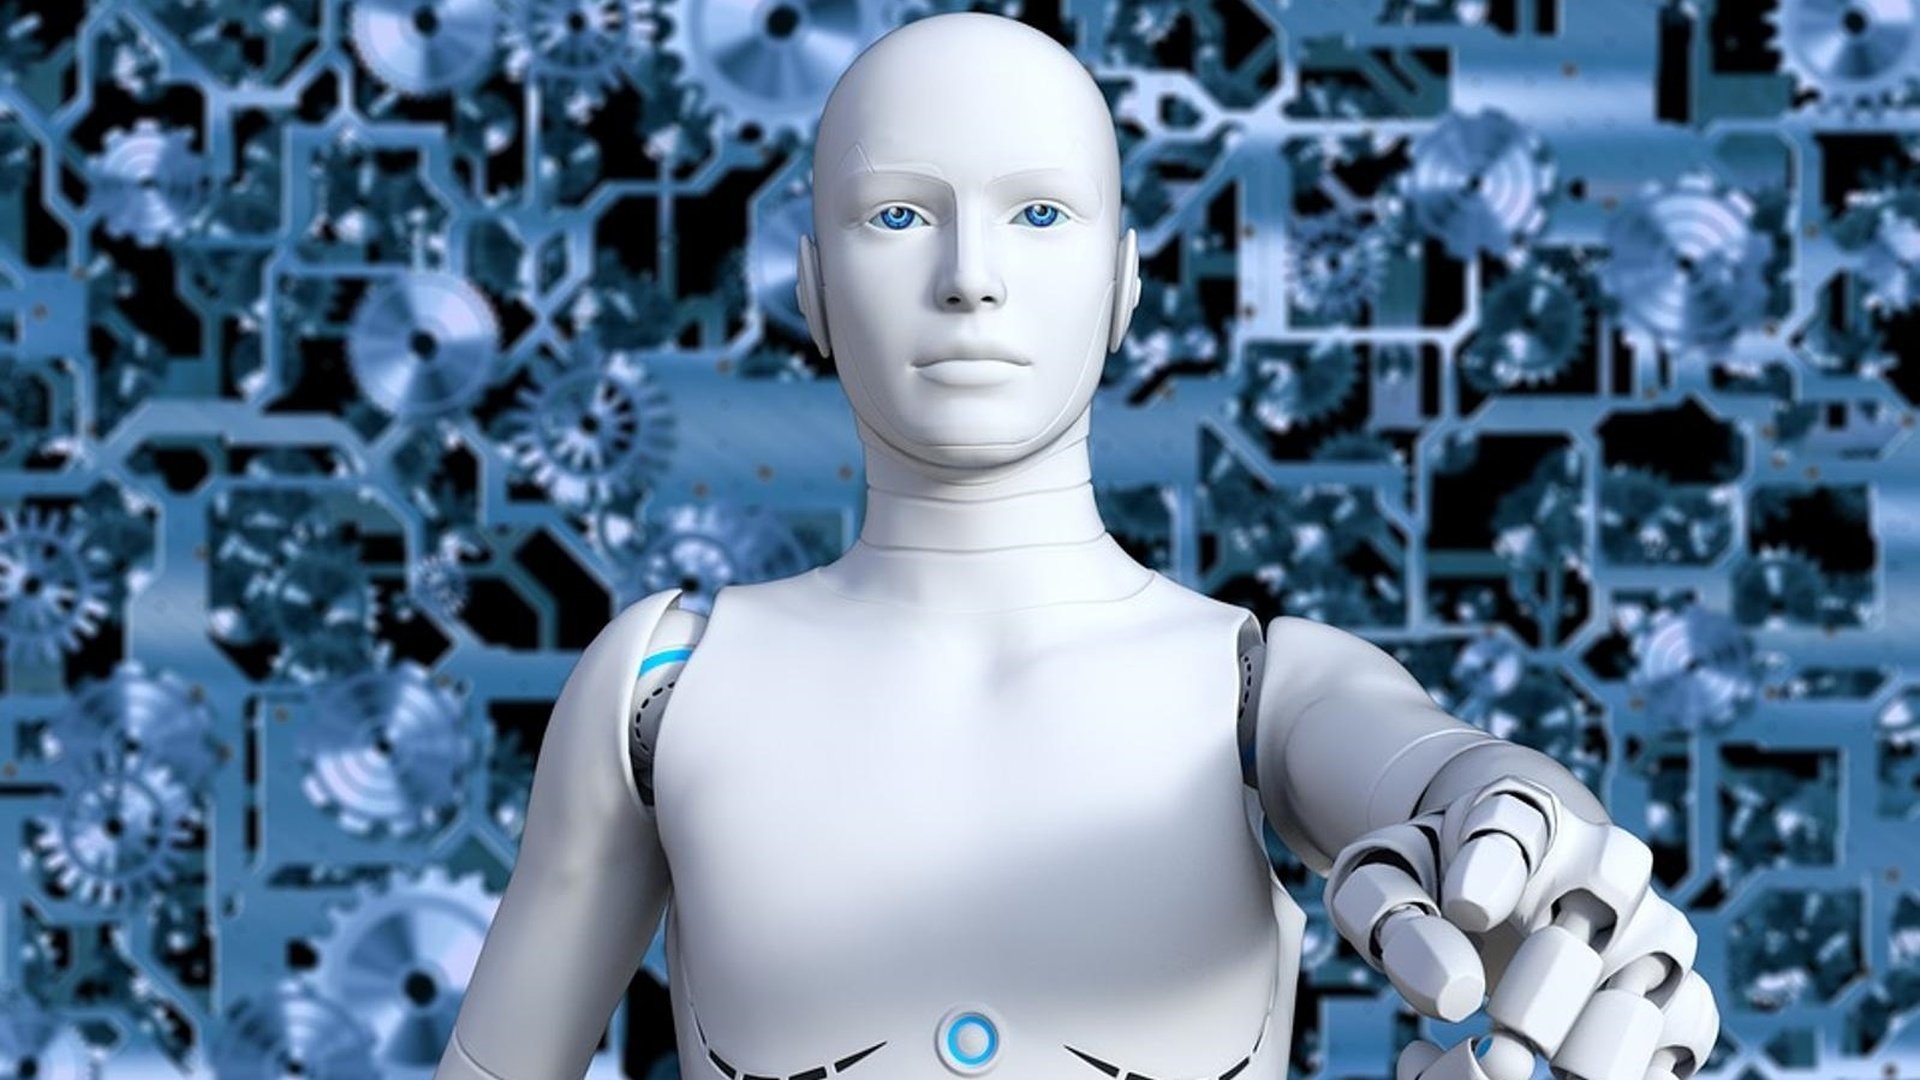 Оцените искусственный интеллект. Айзек Азимов искусственный интеллект. Робот с искусственным интеллектом. Робот человек. Роботы заменят людей.